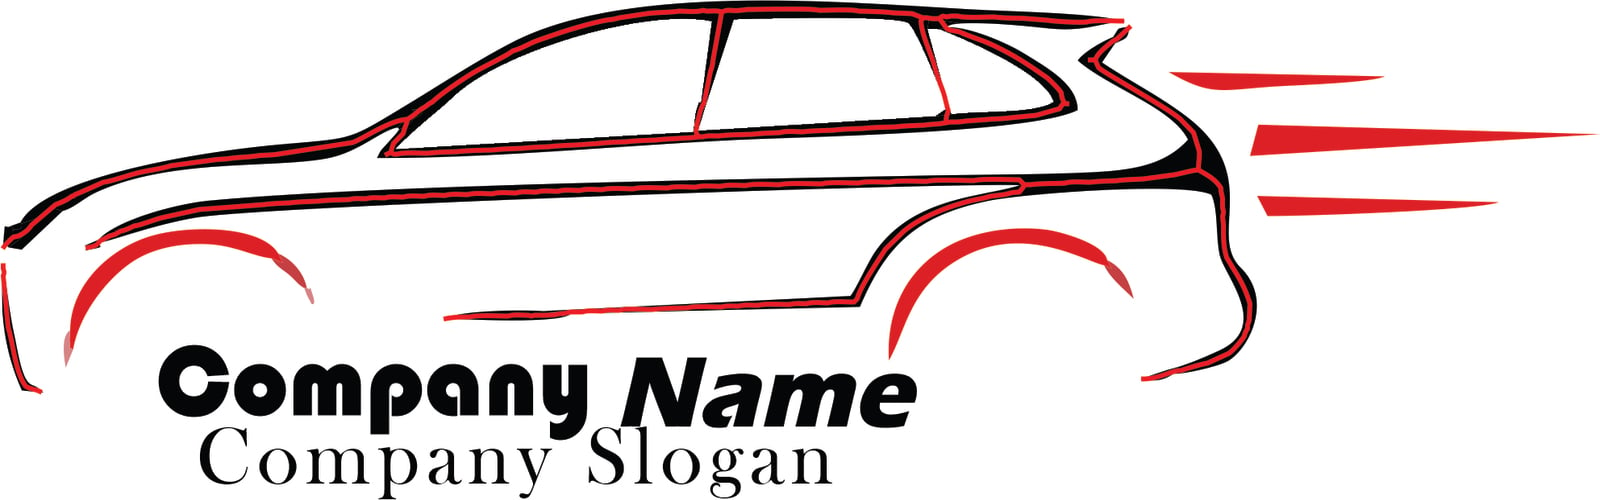 Elegant Car Dealership Logo